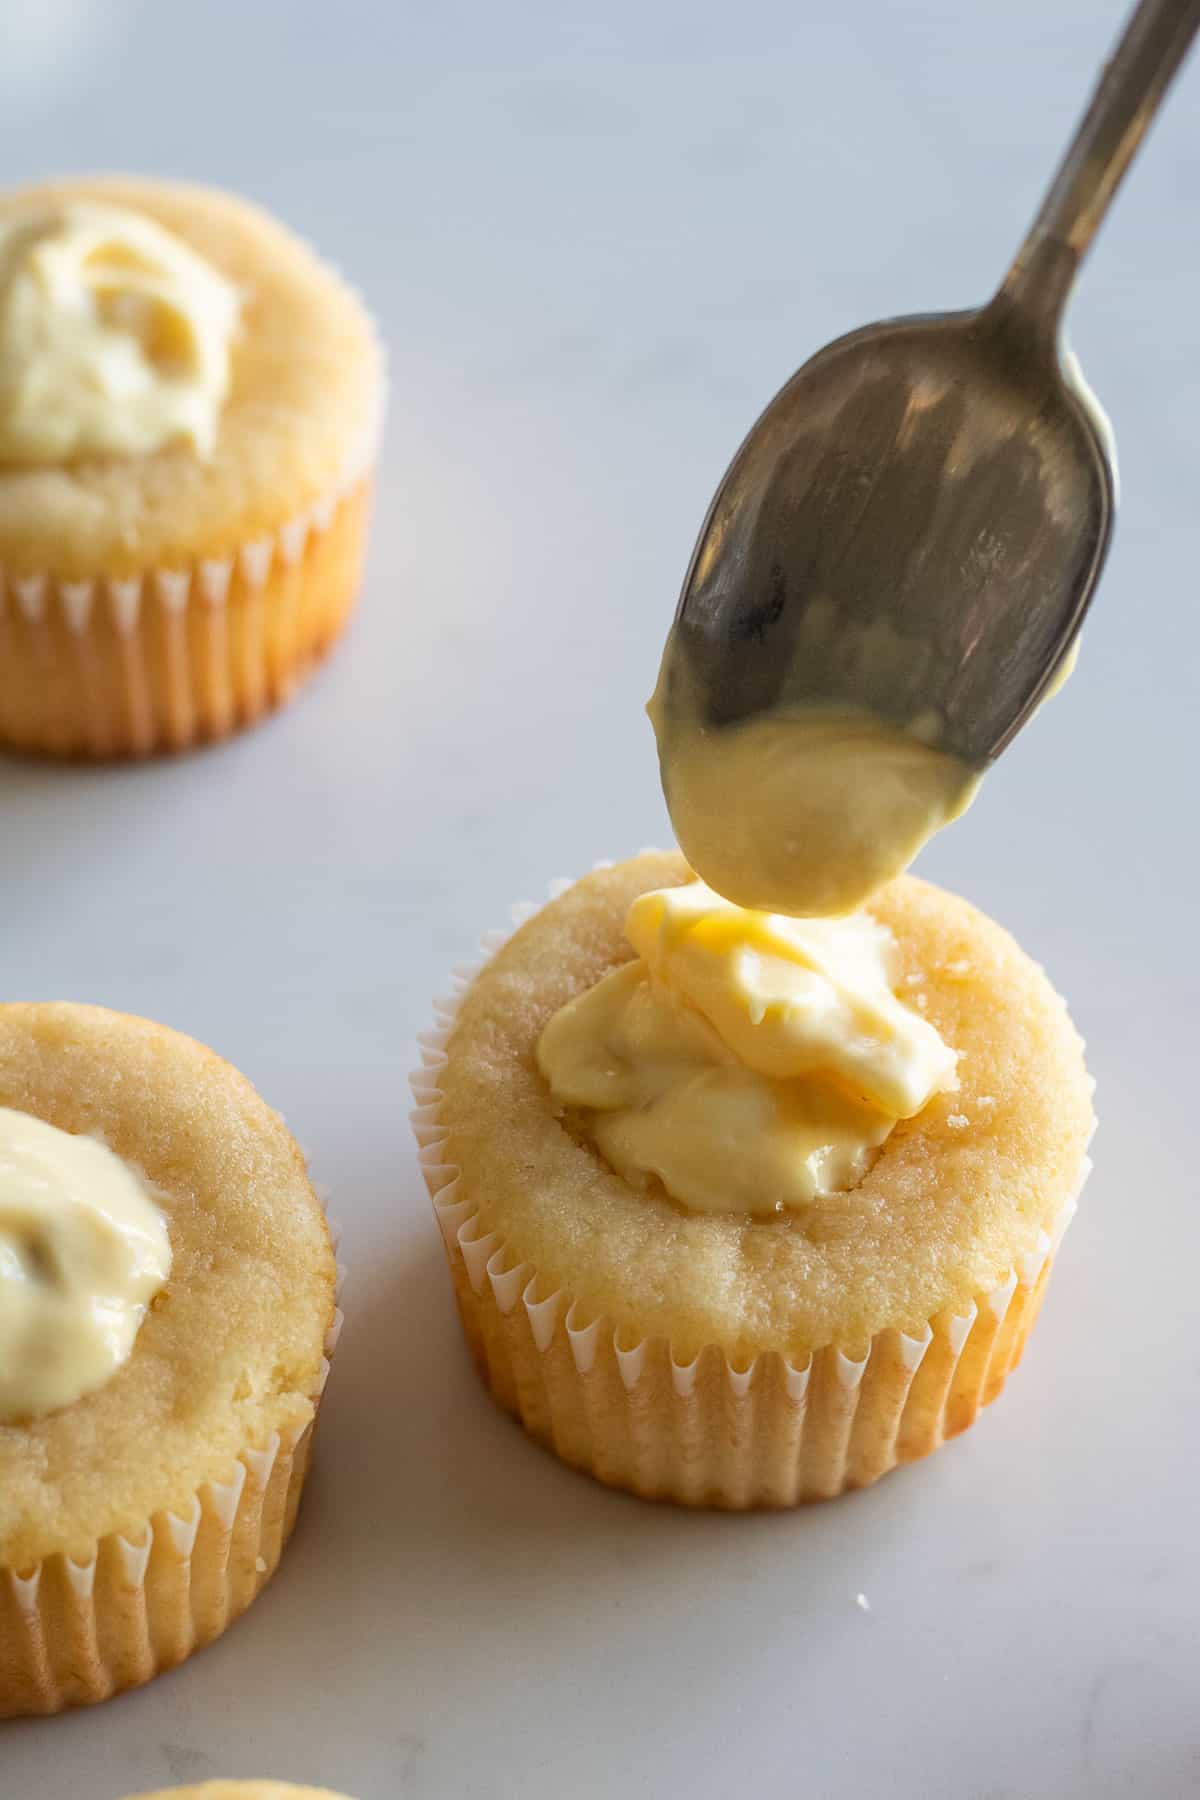 filling vanilla cupcakes with banana pudding filling